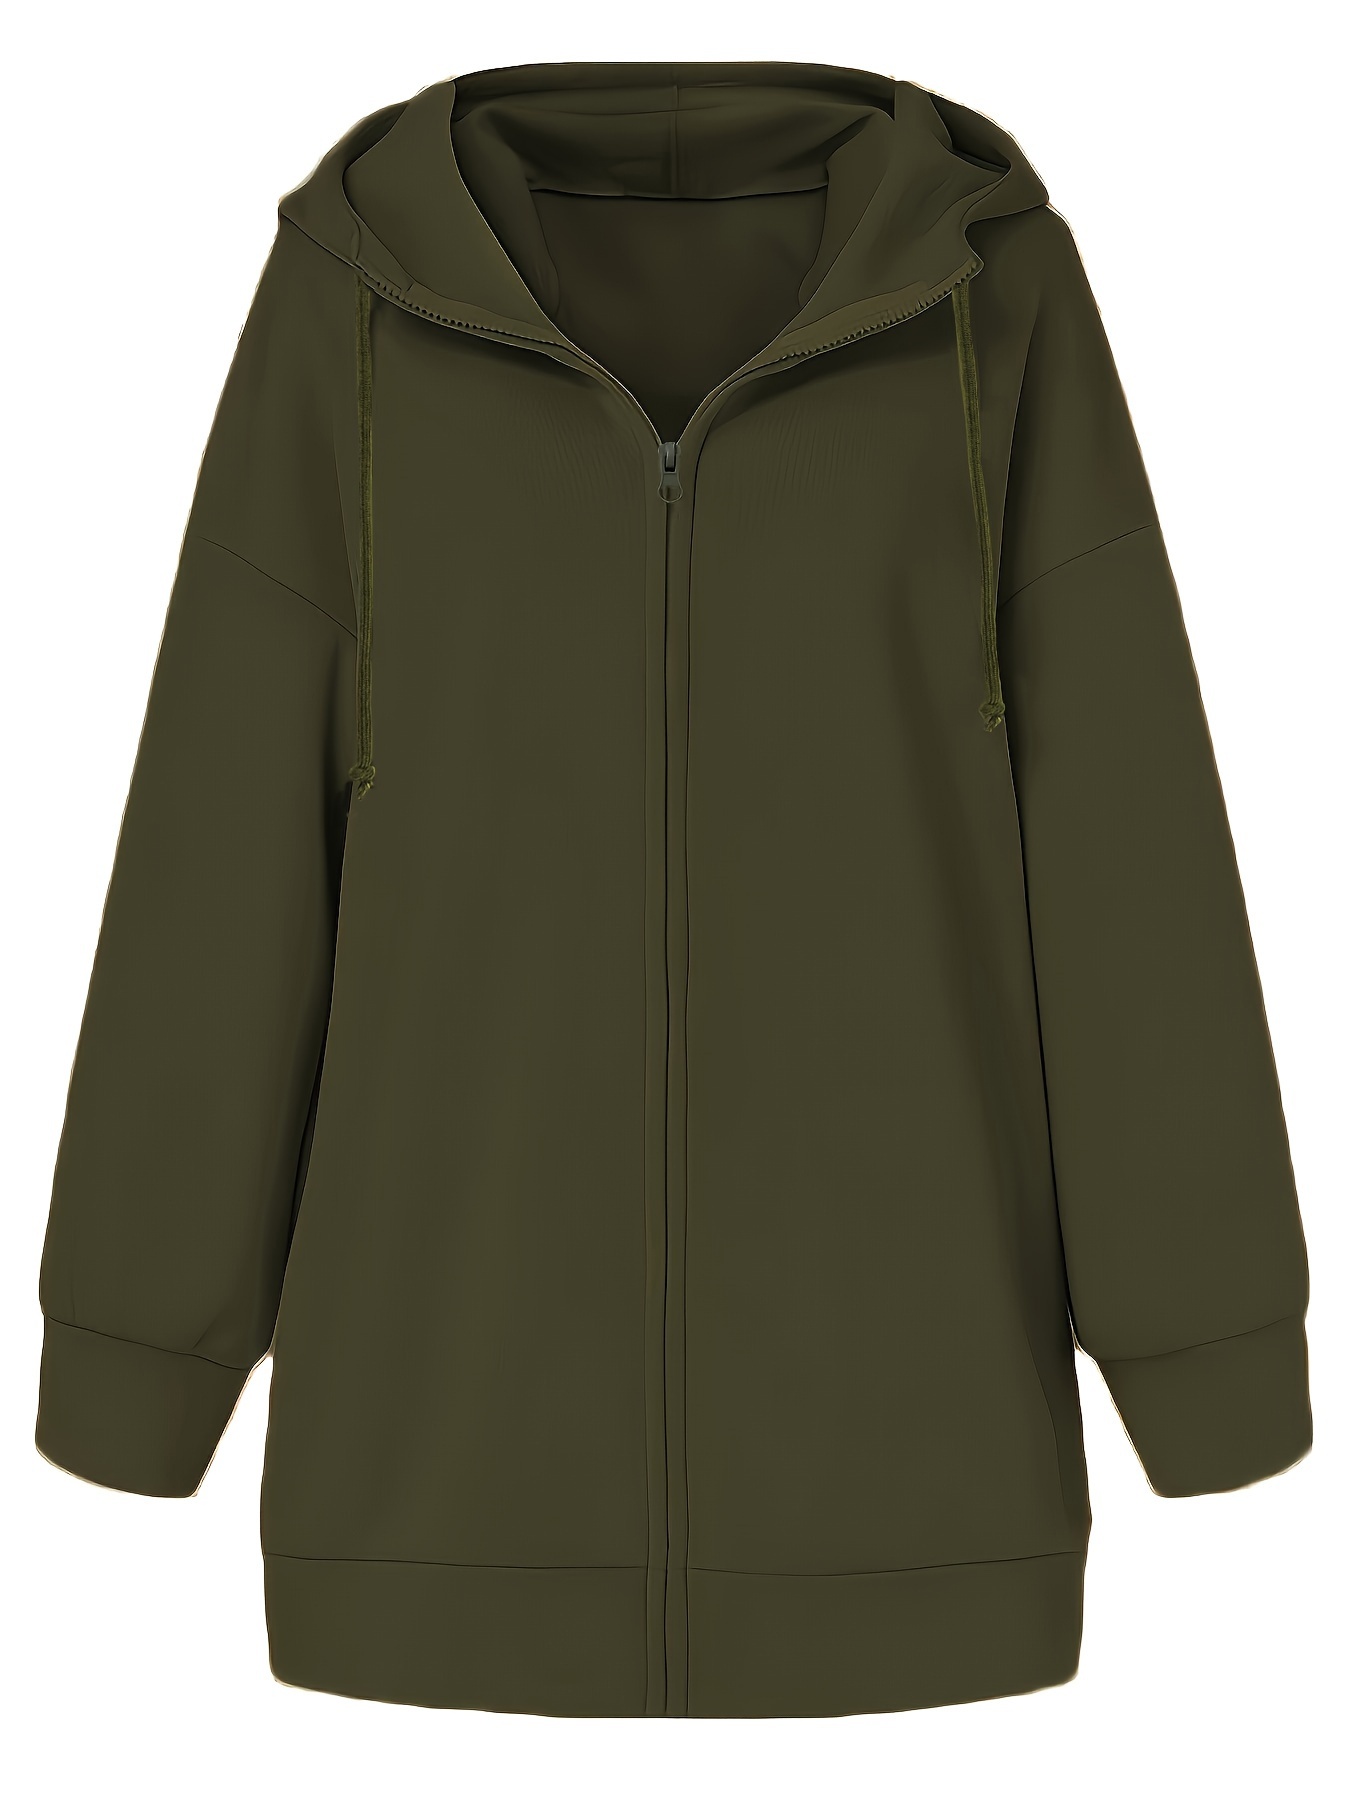 Yyeselk Women's Solid Jacket Plus Fleece Pocket Hooded Zipper Mid Length  Sweater